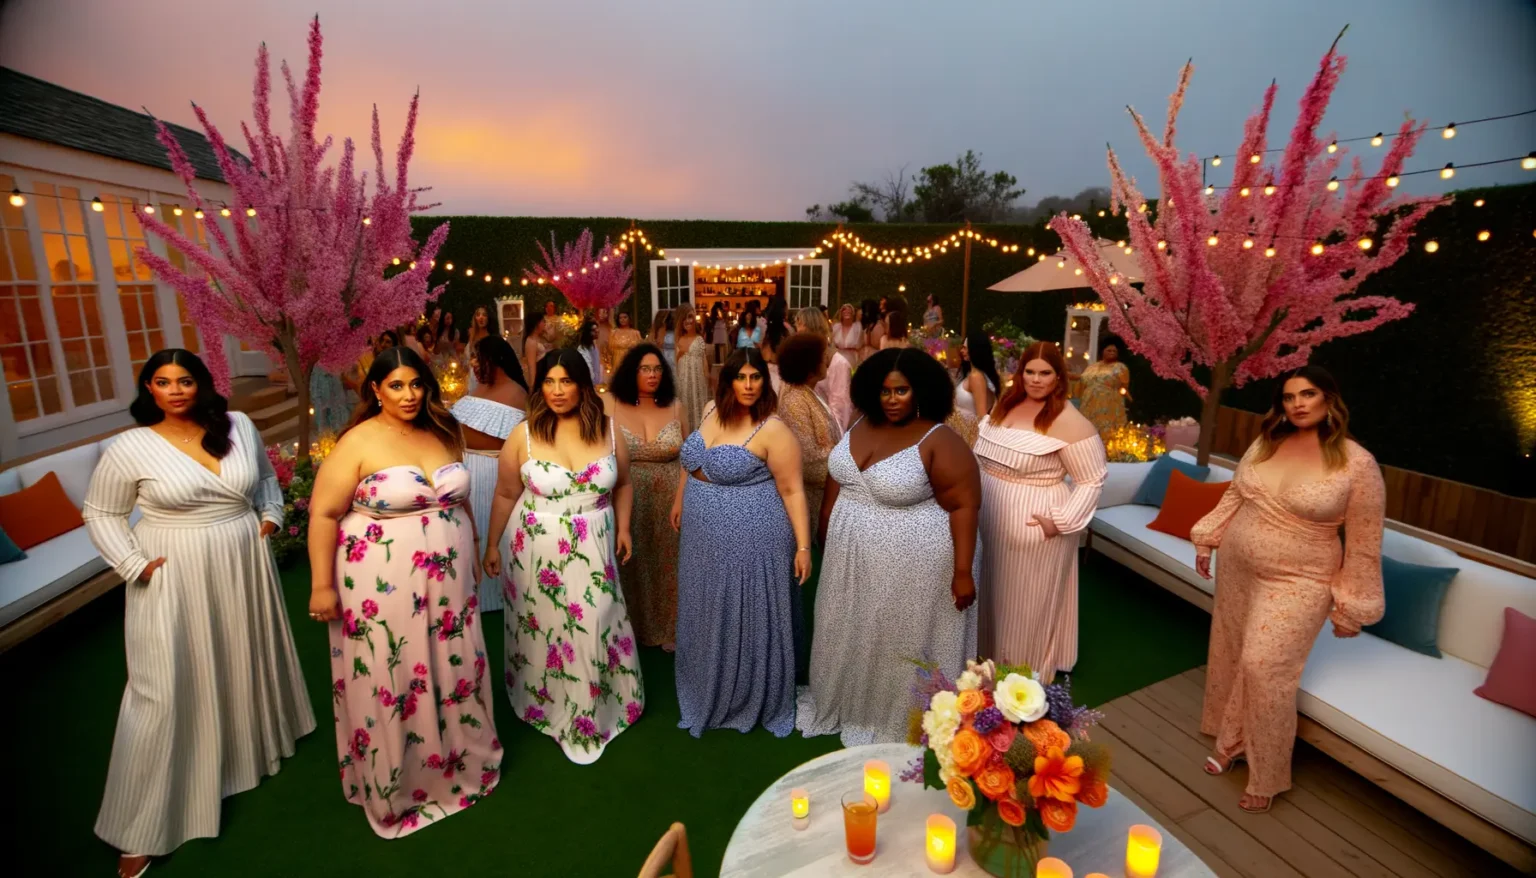 Gruppe von Frauen in eleganter Abendgarderobe auf einer Outdoor-Party bei Sonnenuntergang, umgeben von leuchtenden Lichterketten und dekorativen rosa Bäumen.